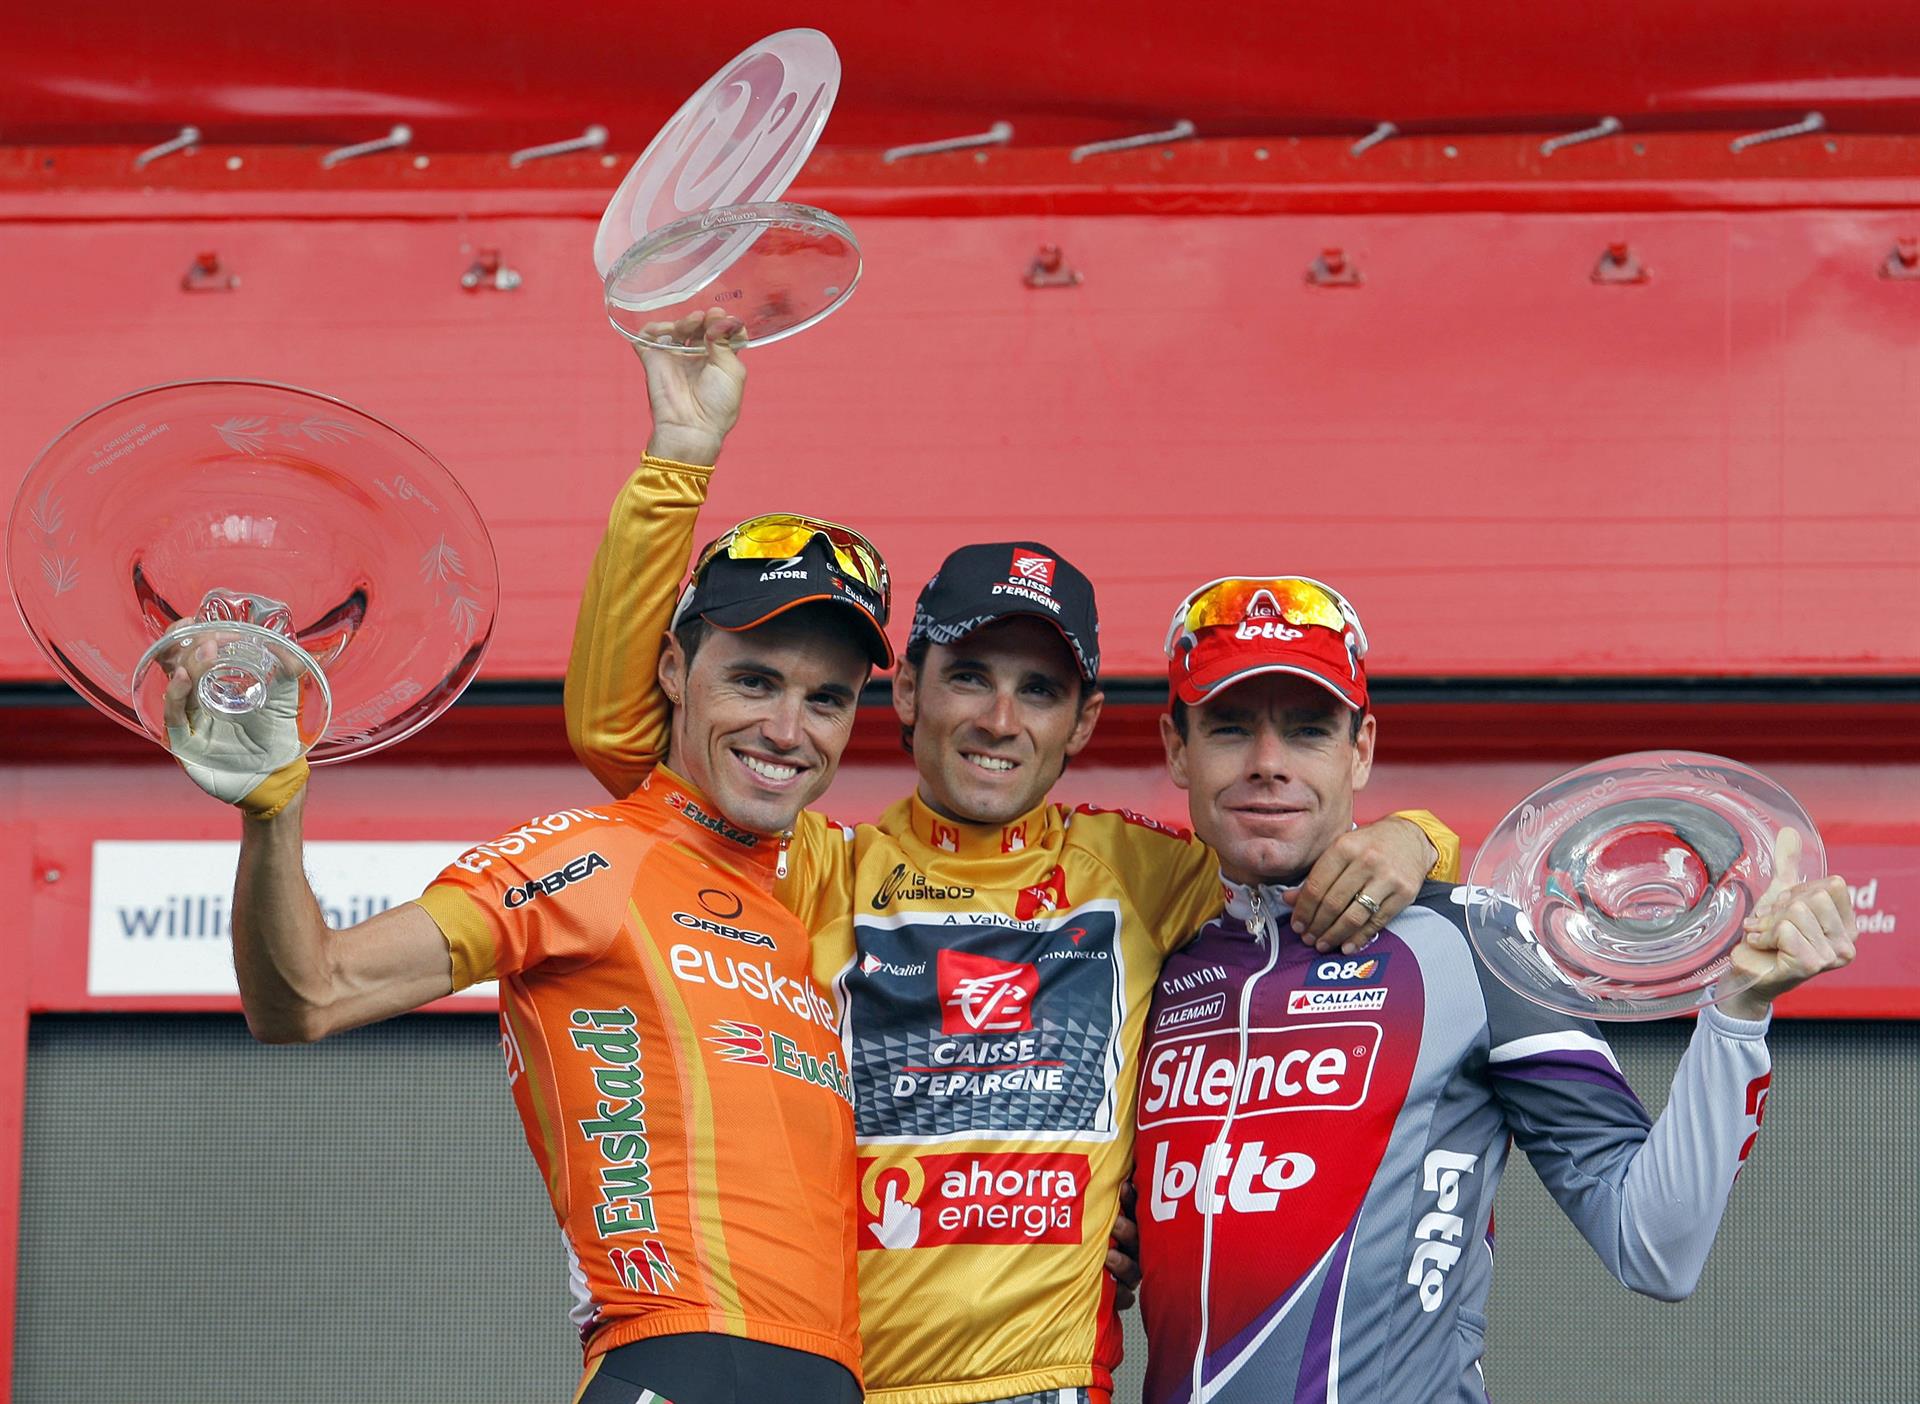 El ciclista español Alejandro Valverde celebra su triunfo en la Vuelta 2009.EFE/Toni Albir
